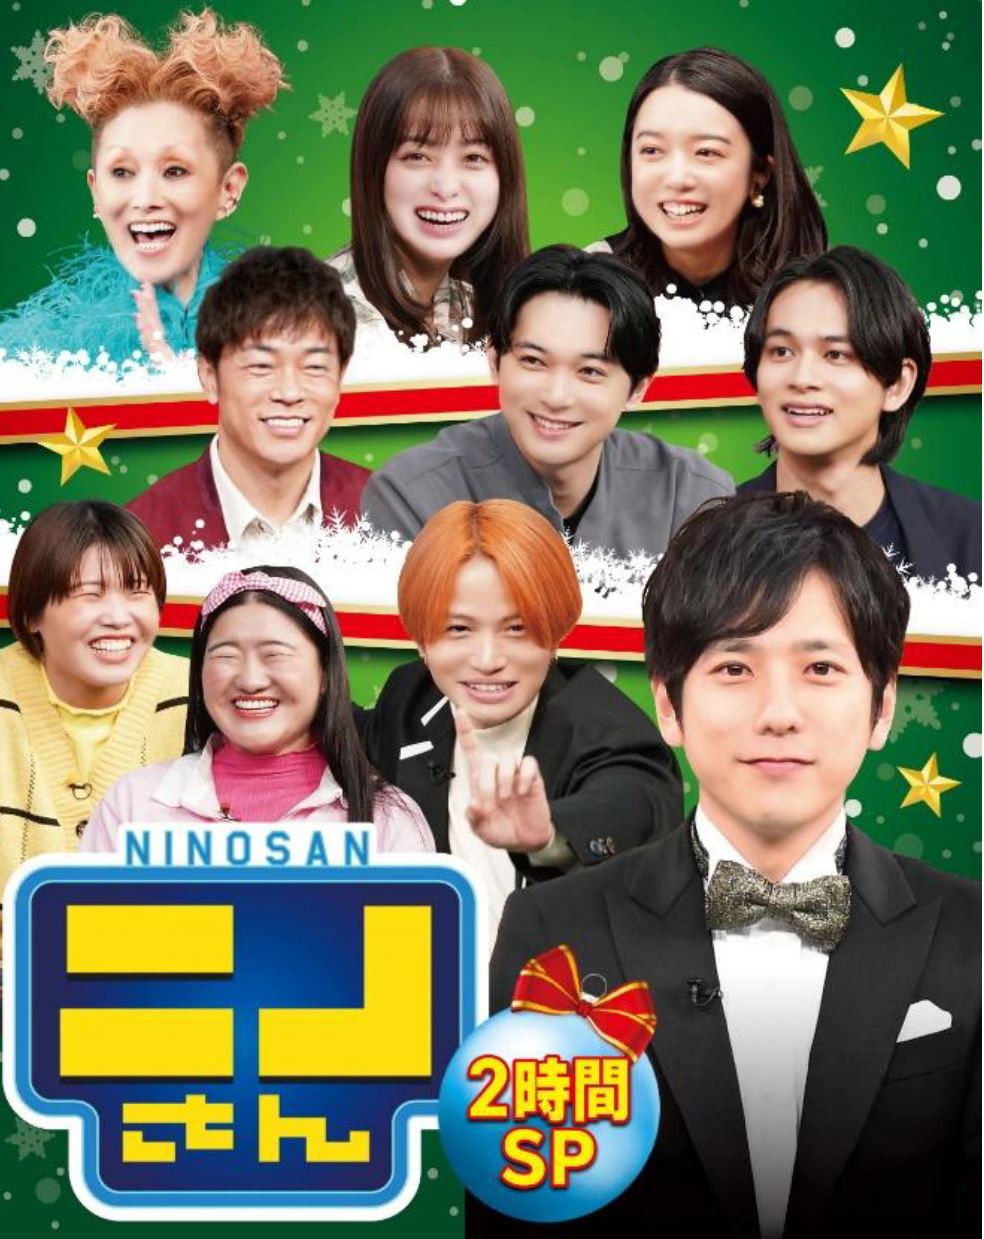 ニノさん クリスマスダービーSP』超豪華俳優陣が大集結! オリジナル競技で大熱戦! | FANY Magazine